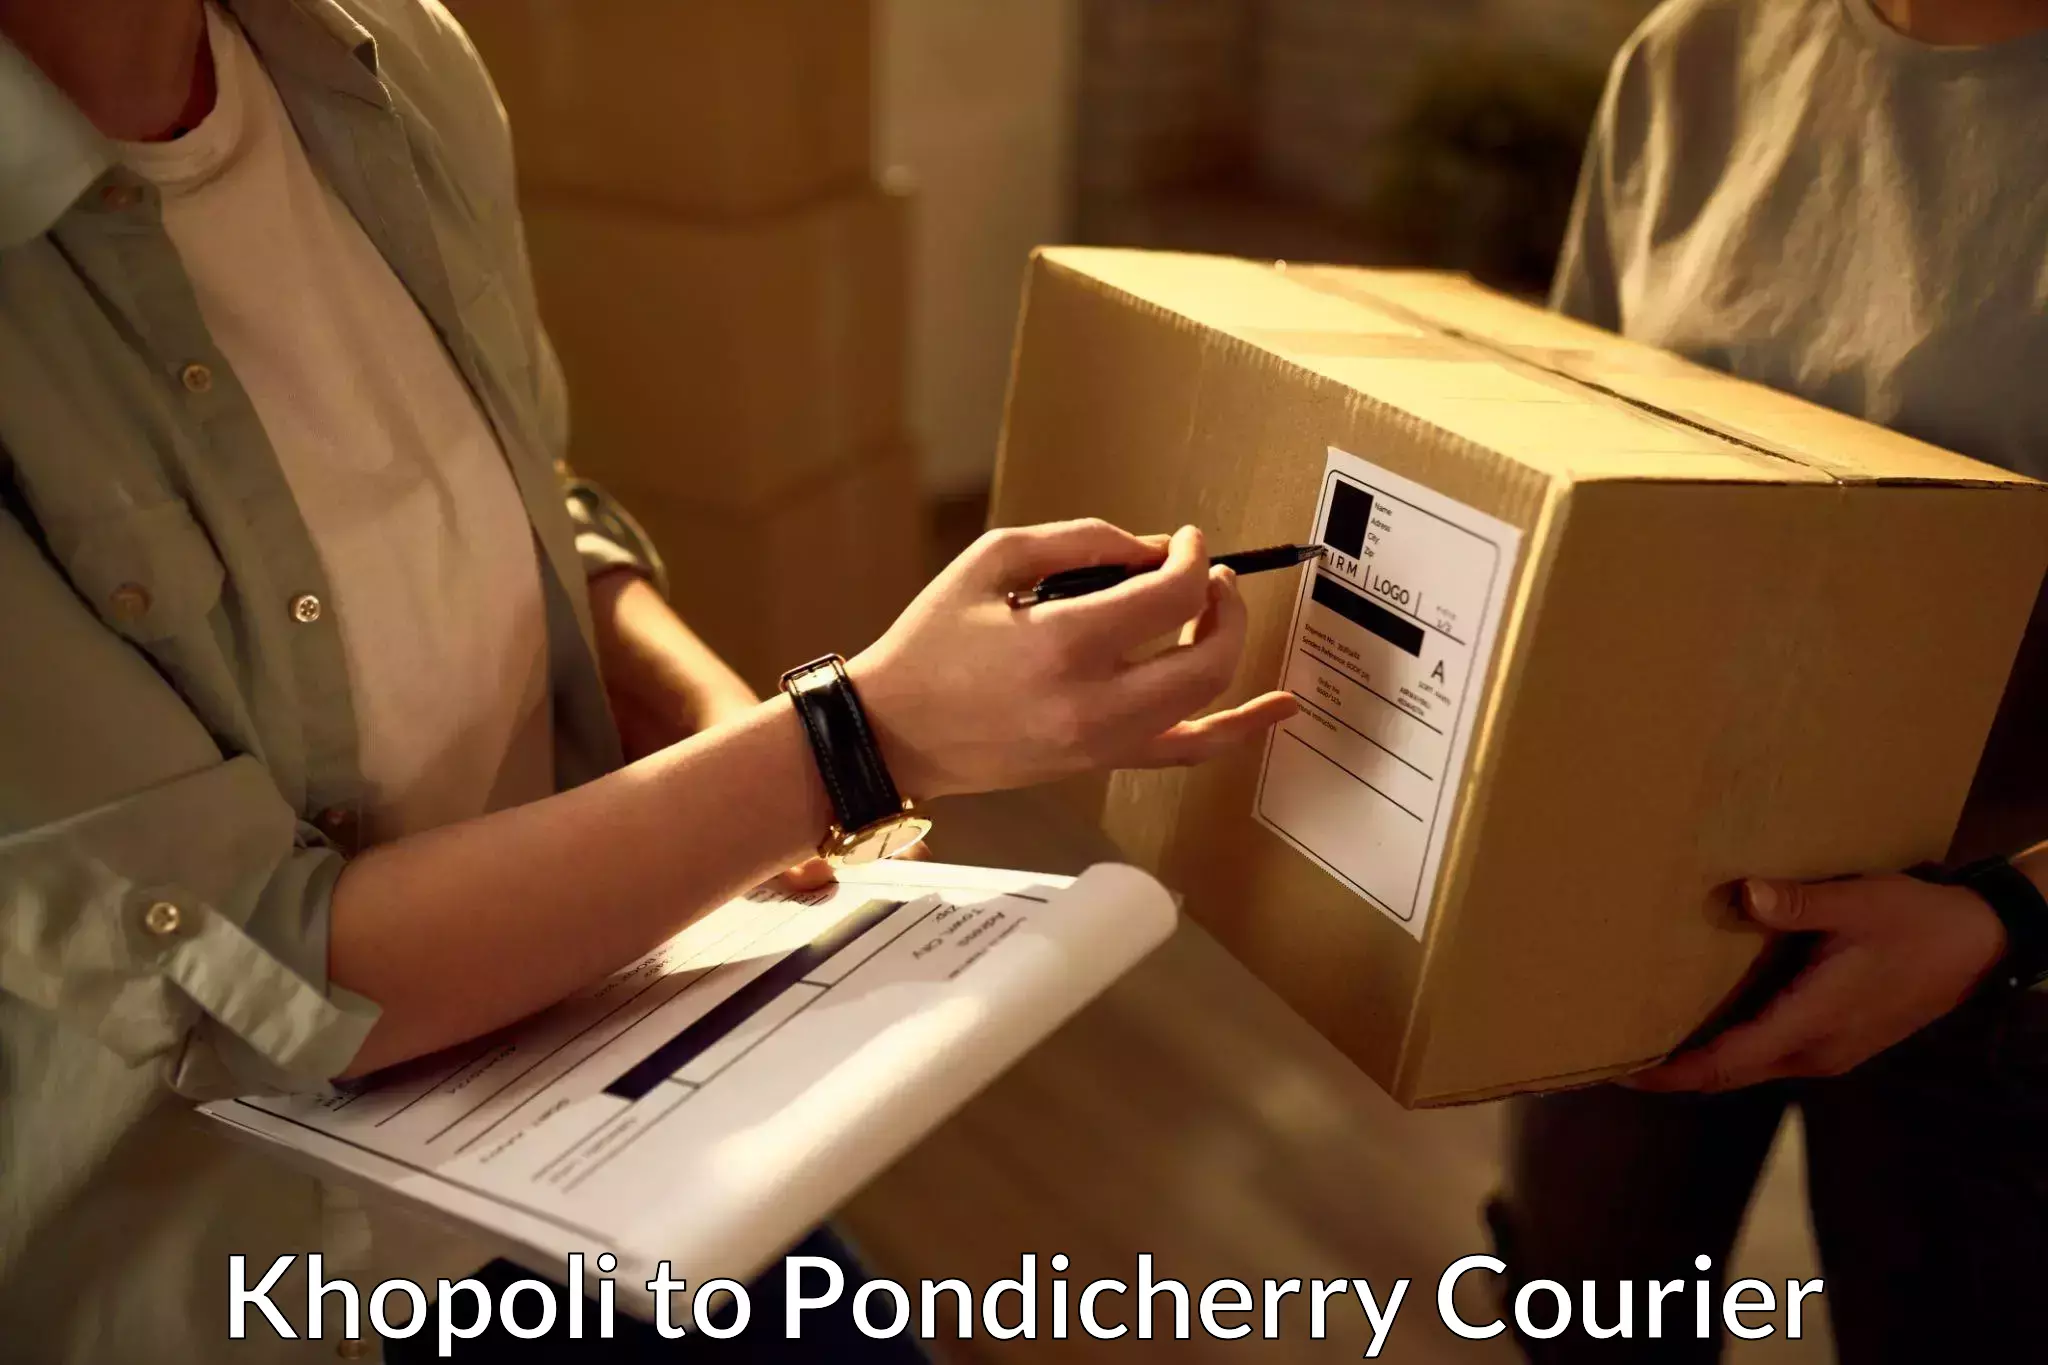 Courier service comparison Khopoli to Pondicherry